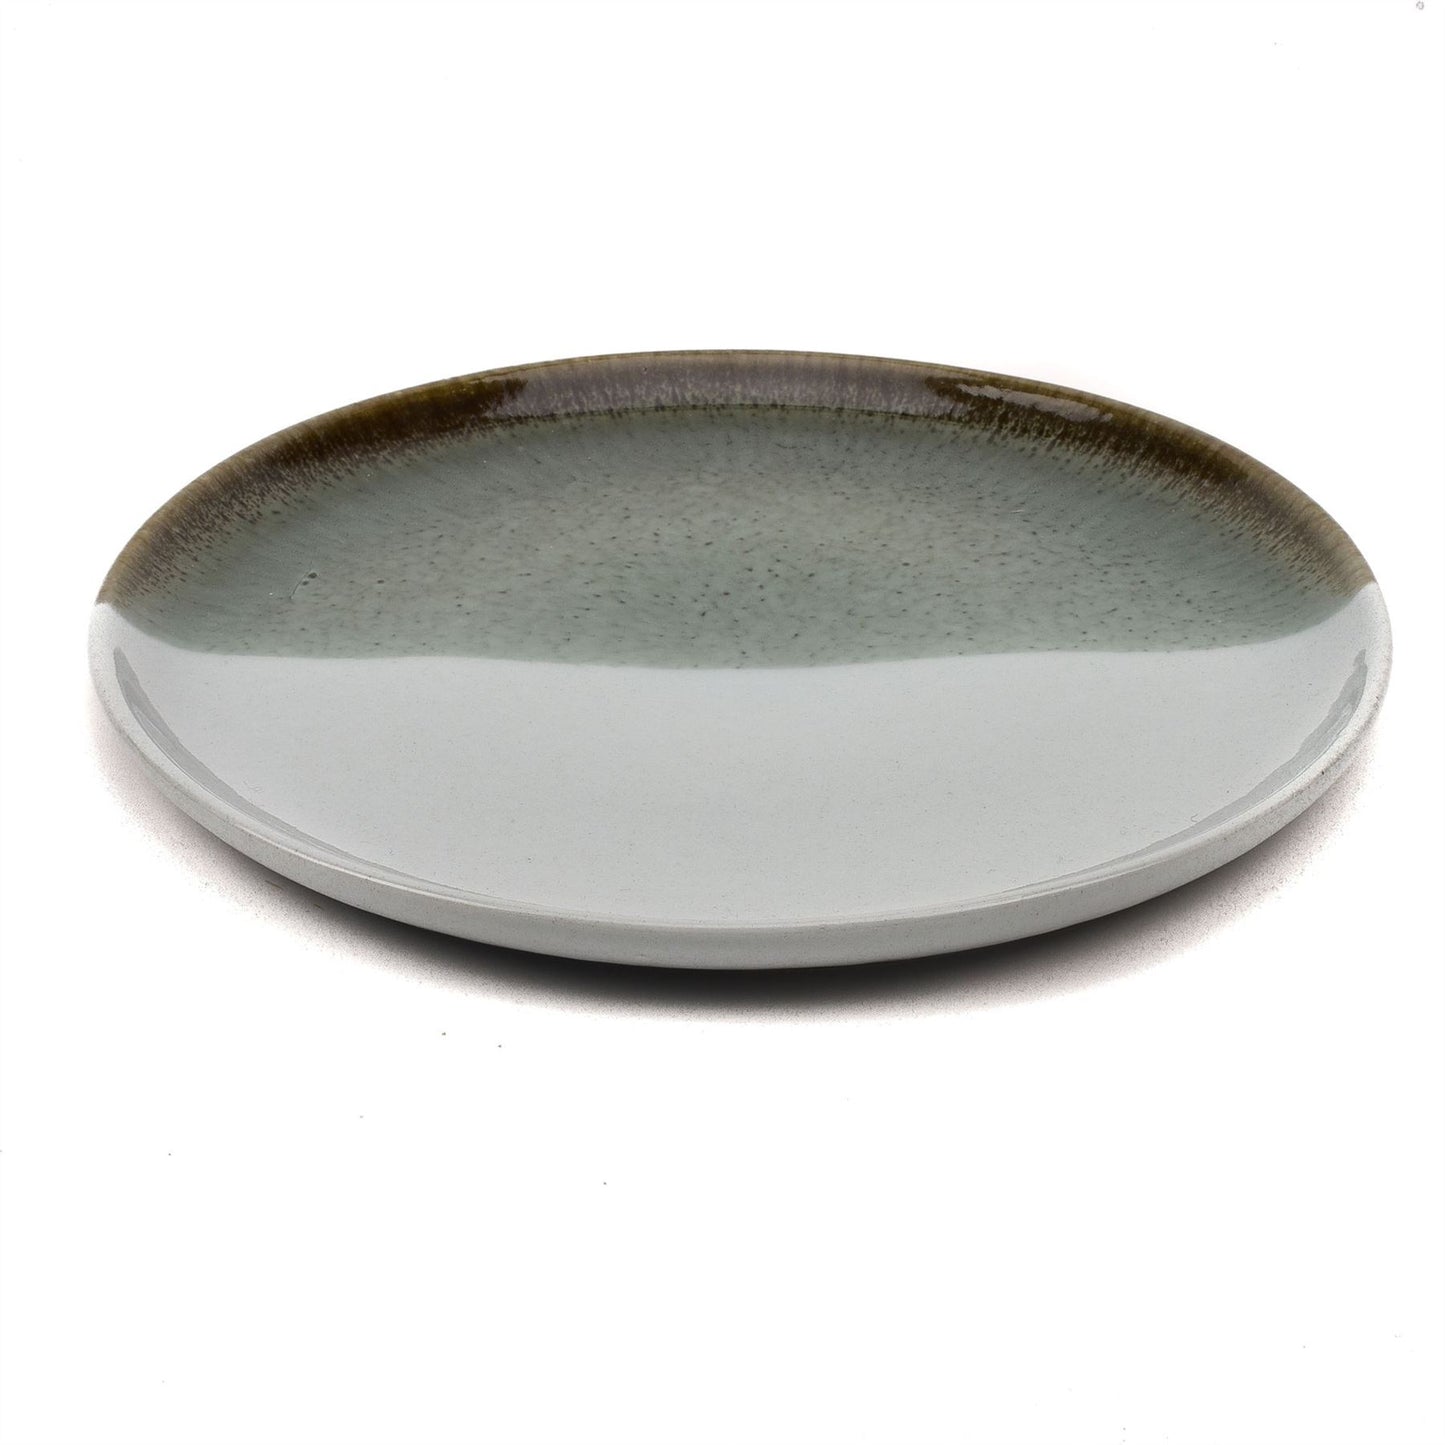 Hestia Set of 4 Reactive Glaze Grey Plates 23cm